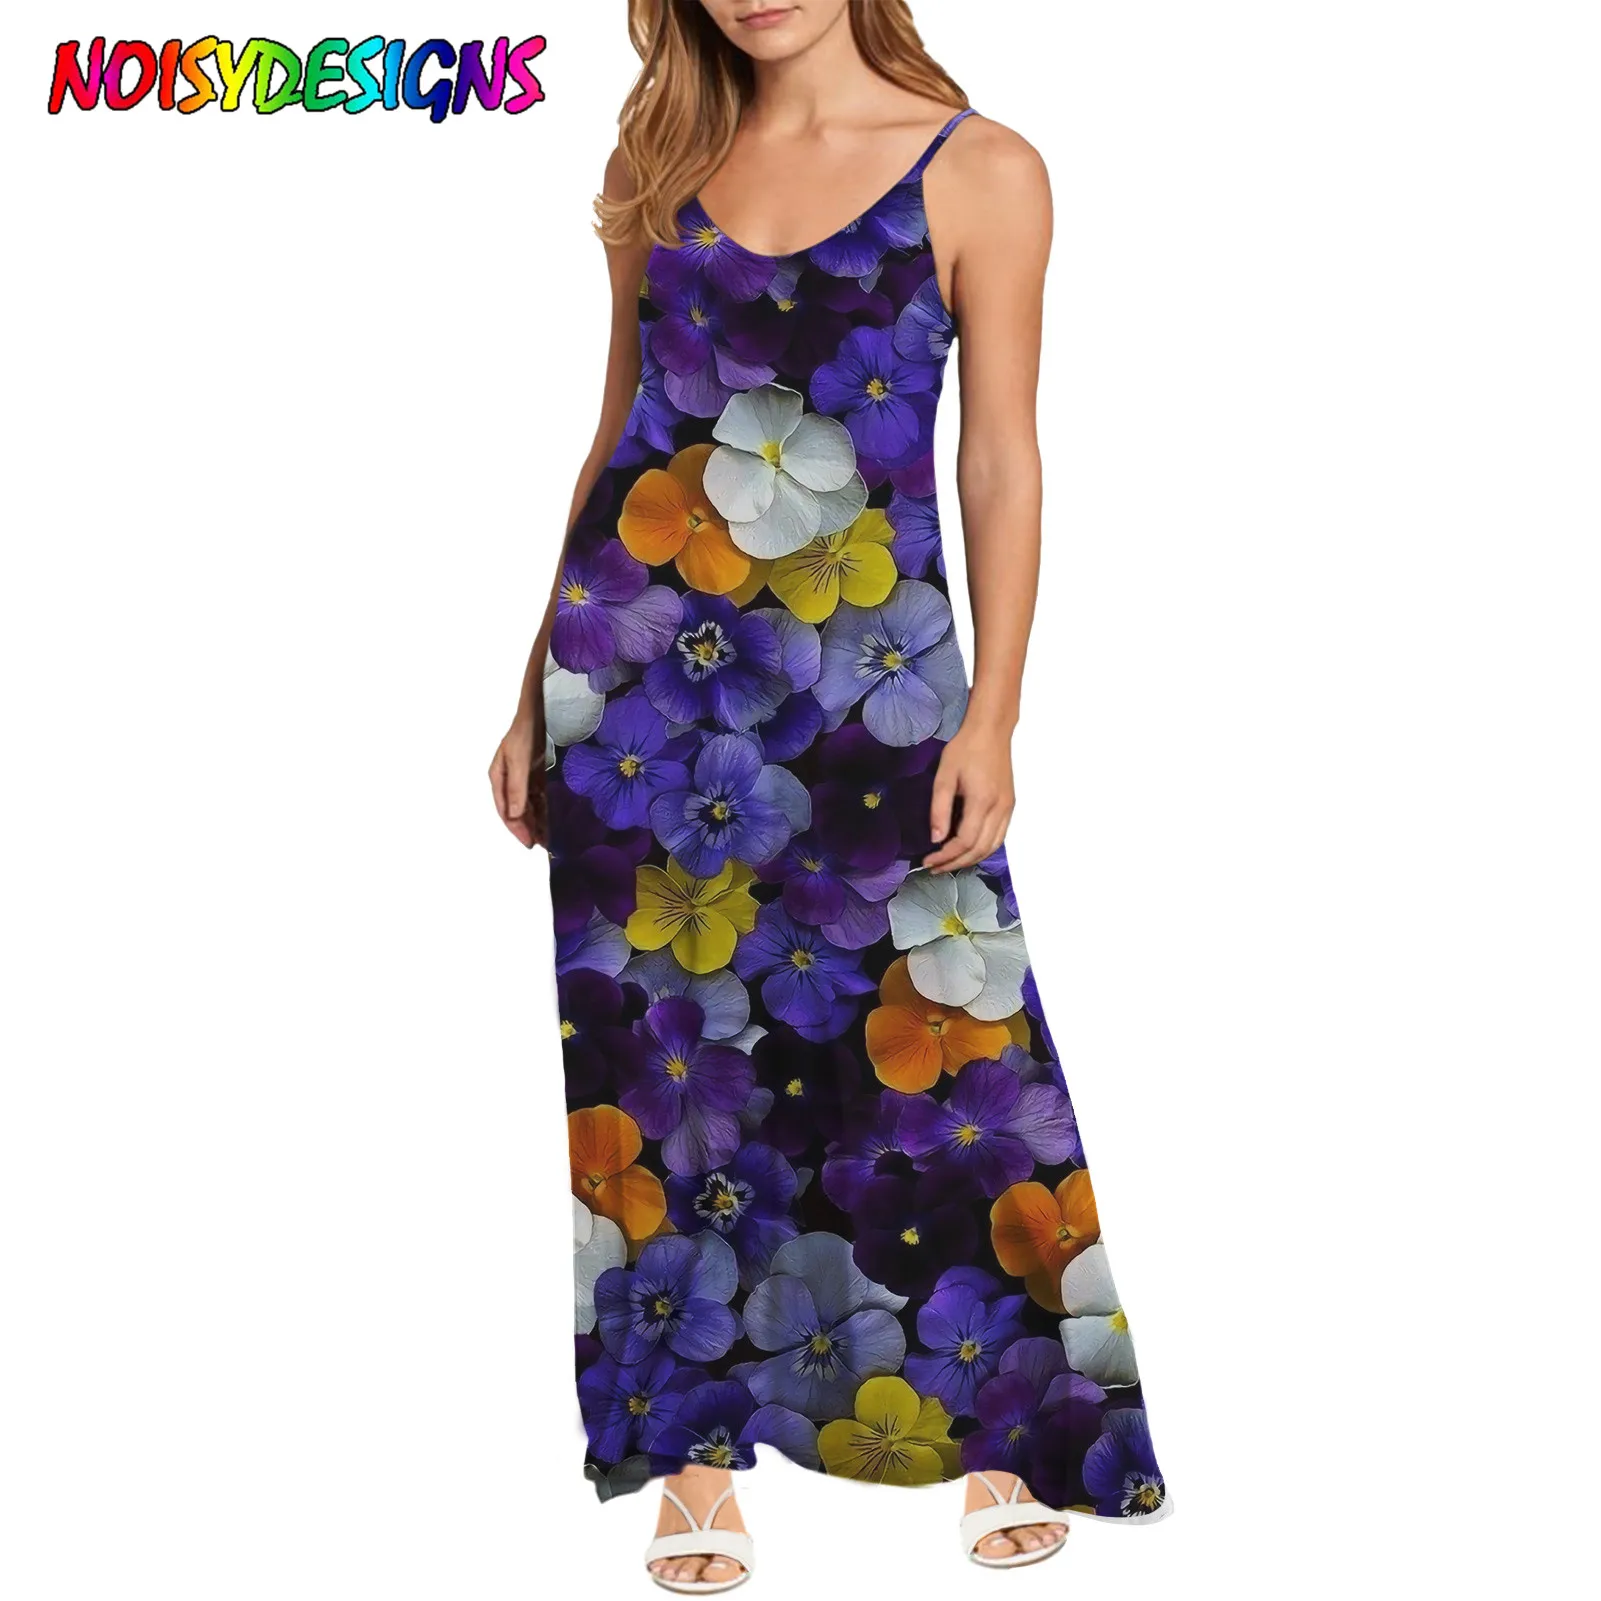 NOISYDESIGNS Women's Dresses Elegant V-Neck Sundress Spaghetti Strap High Street Dress Summer Purple Pansy Flowers Prints Dress